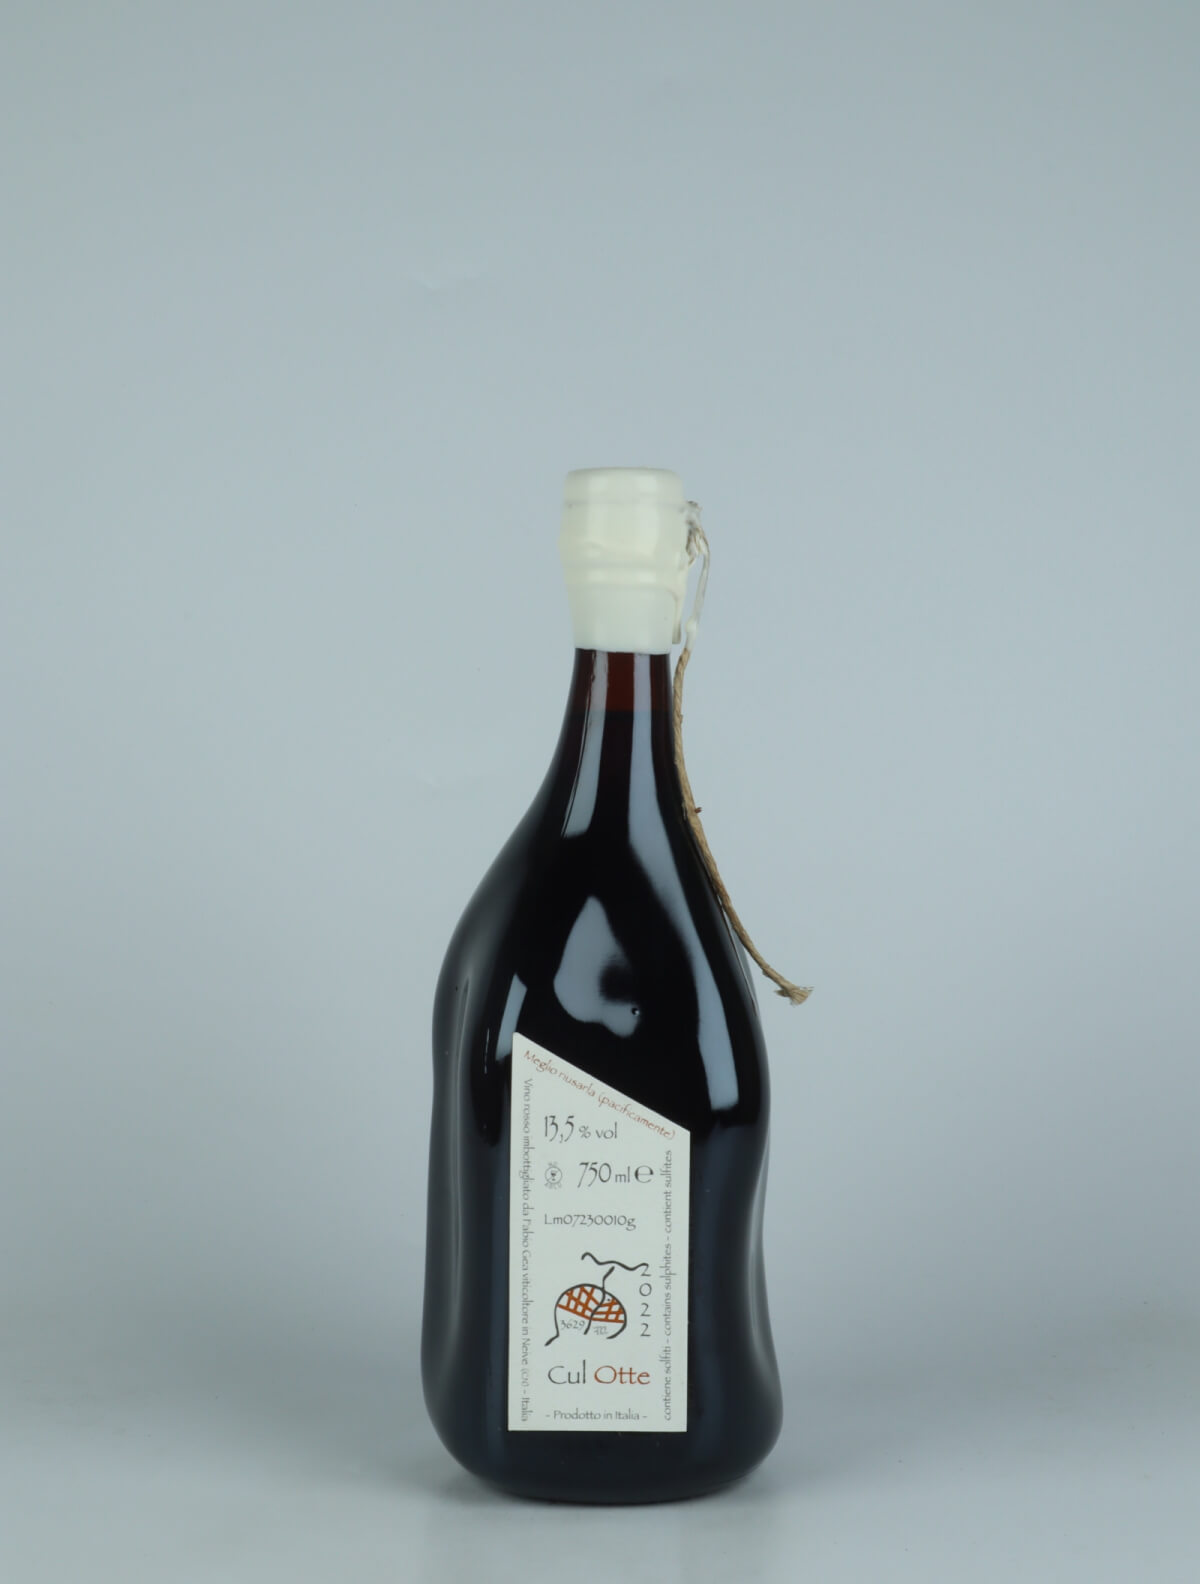 En flaske 2022 Cul Otte Rødvin fra Fabio Gea, Piemonte i Italien